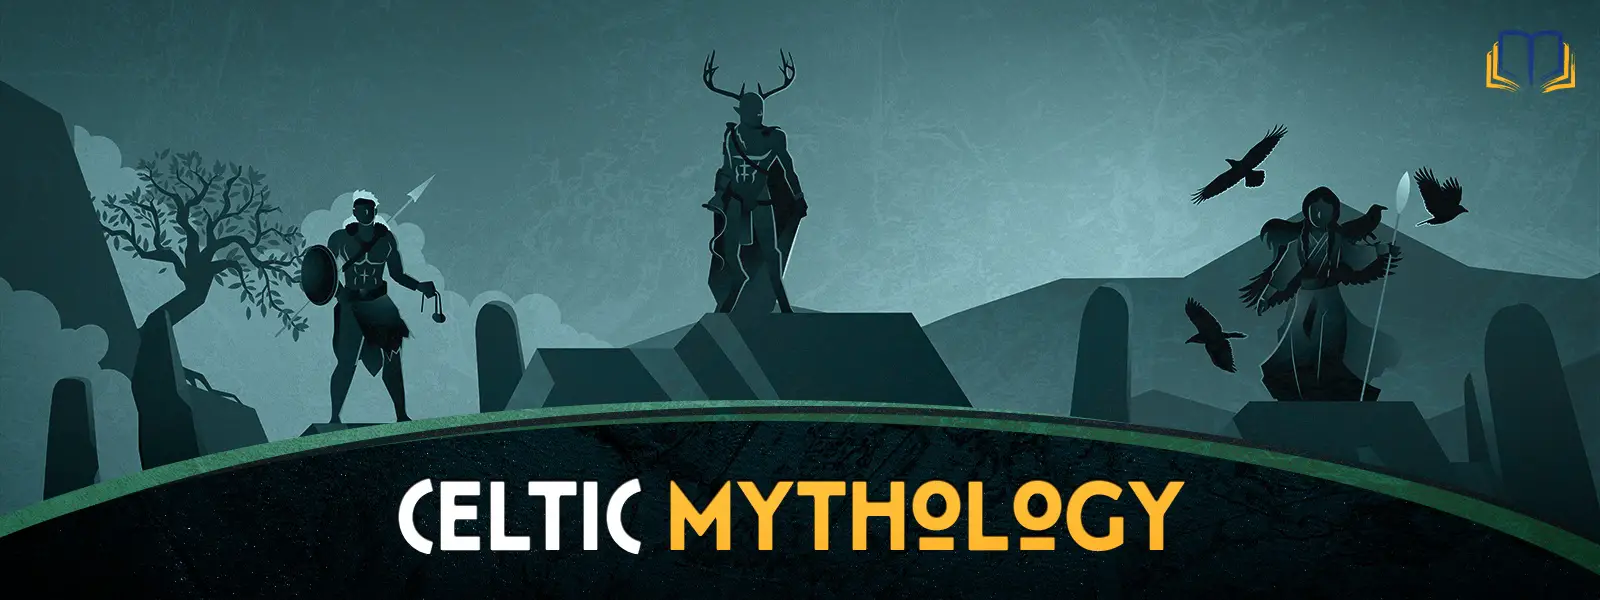 Celtic Mythology Hub Image